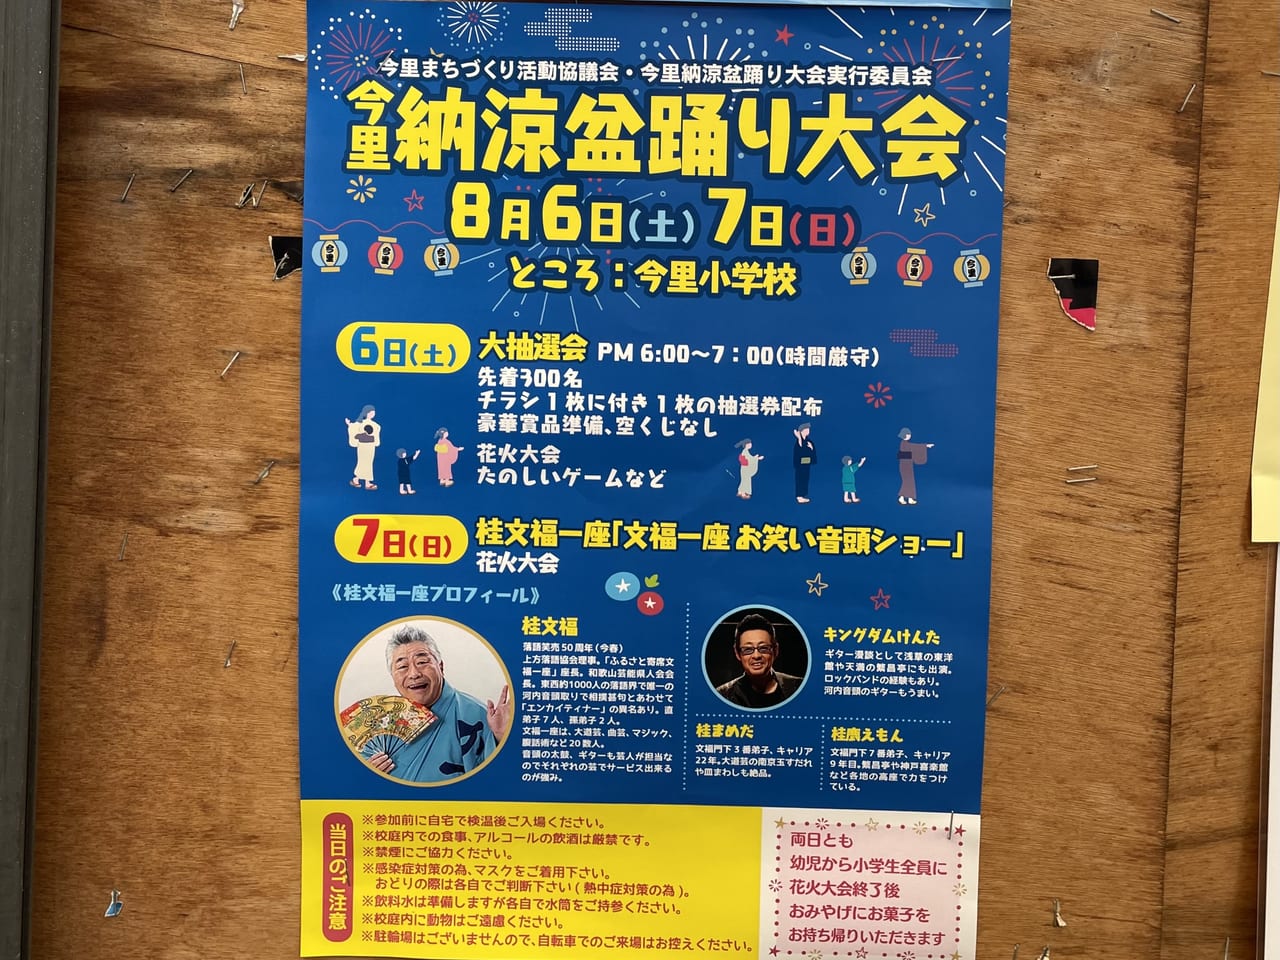 今里納涼盆踊り大会のポスター